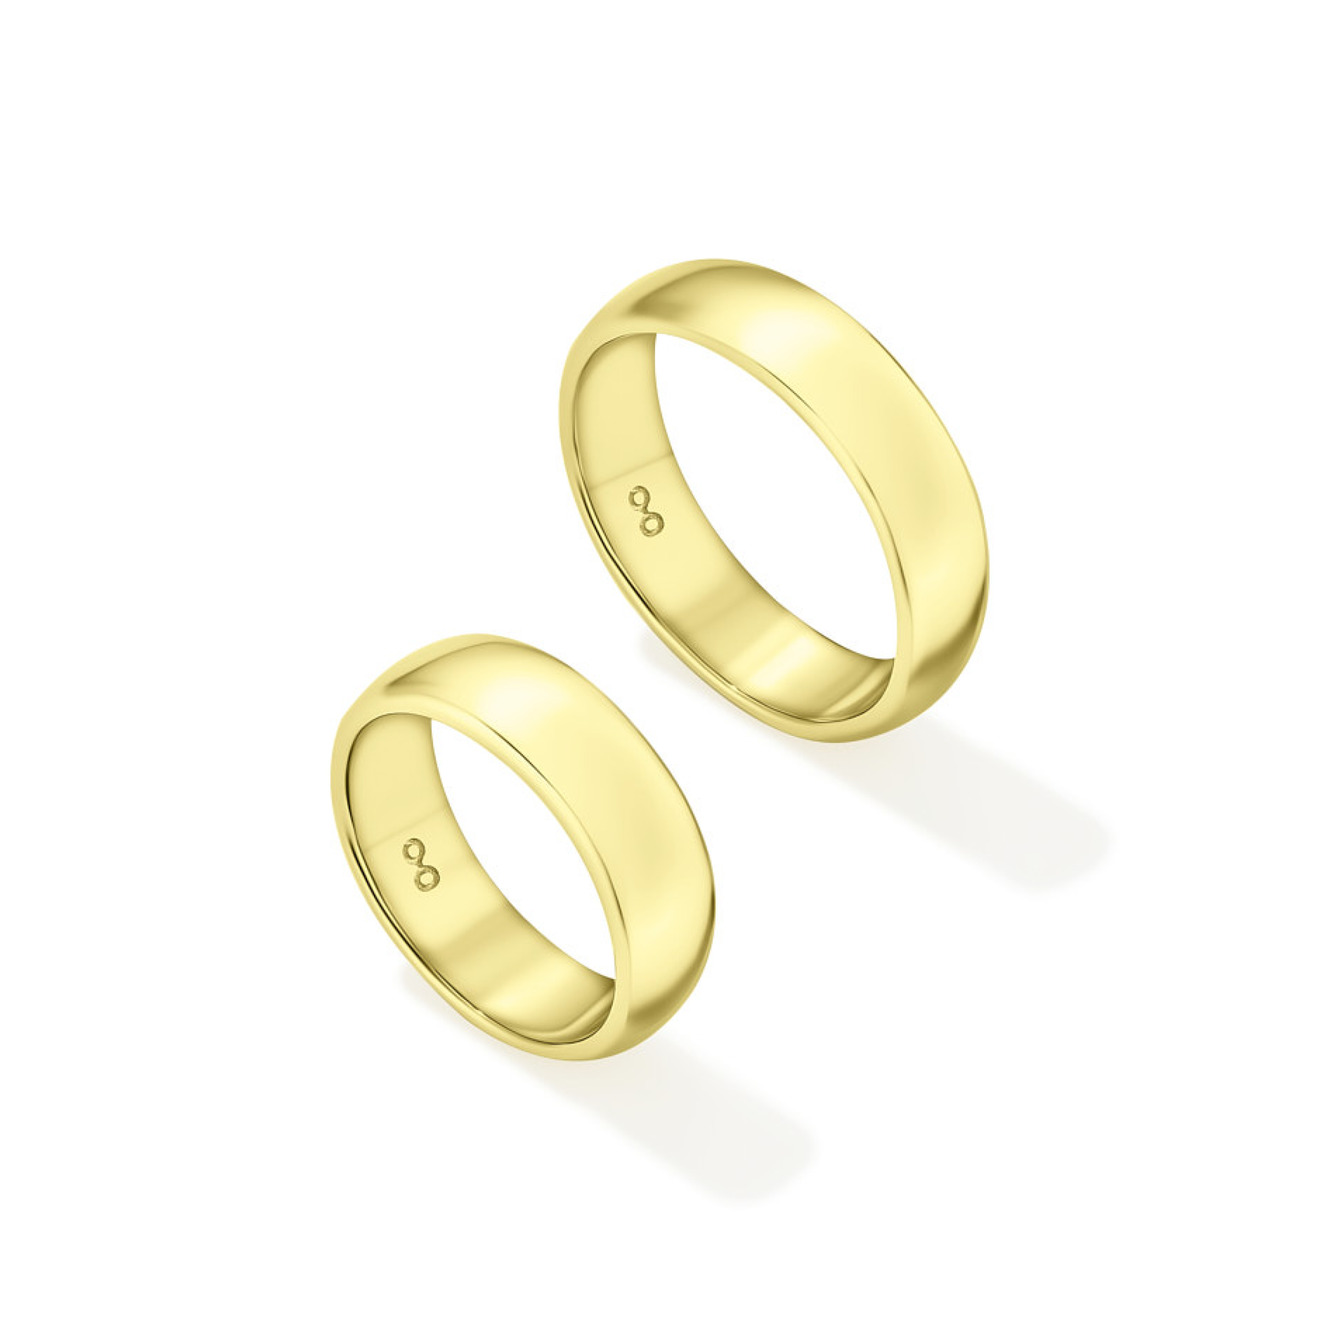 Avgvst Фламандское среднее кольцо из лимонного золота avgvst кольцо мюзле из лимонного золота